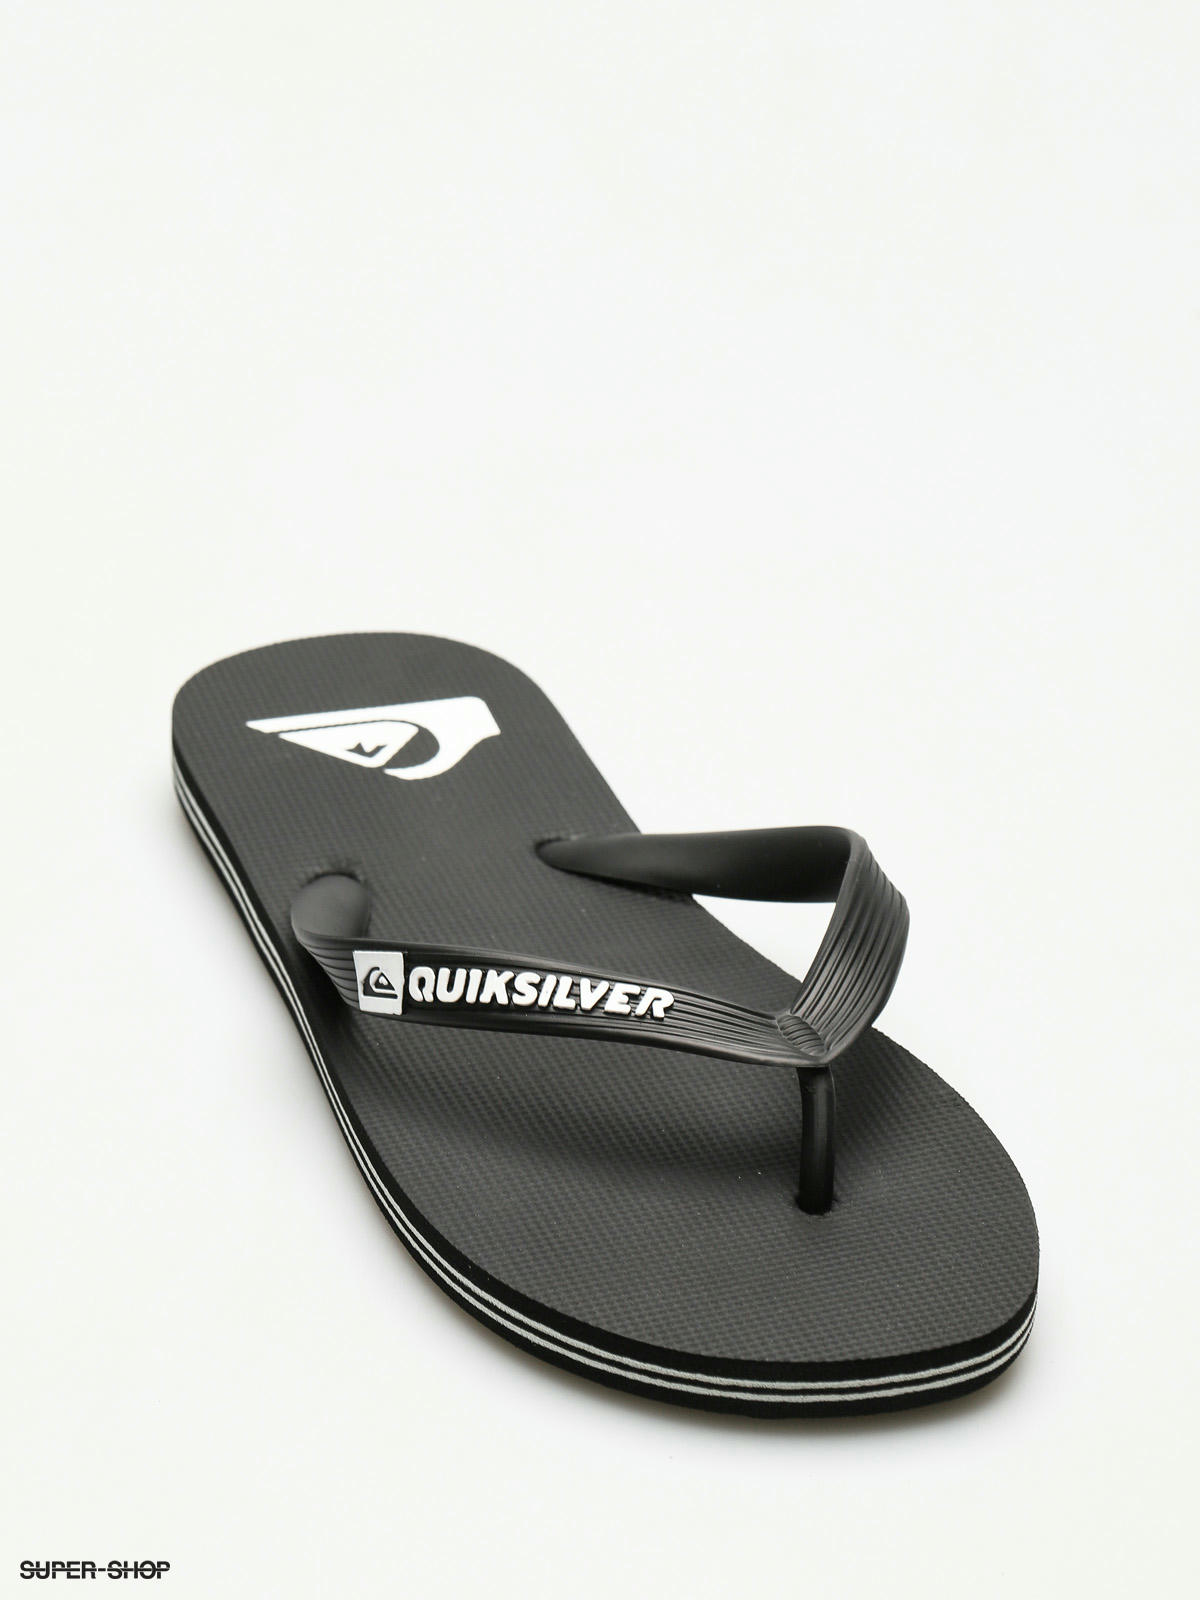 quiksilver flip flops